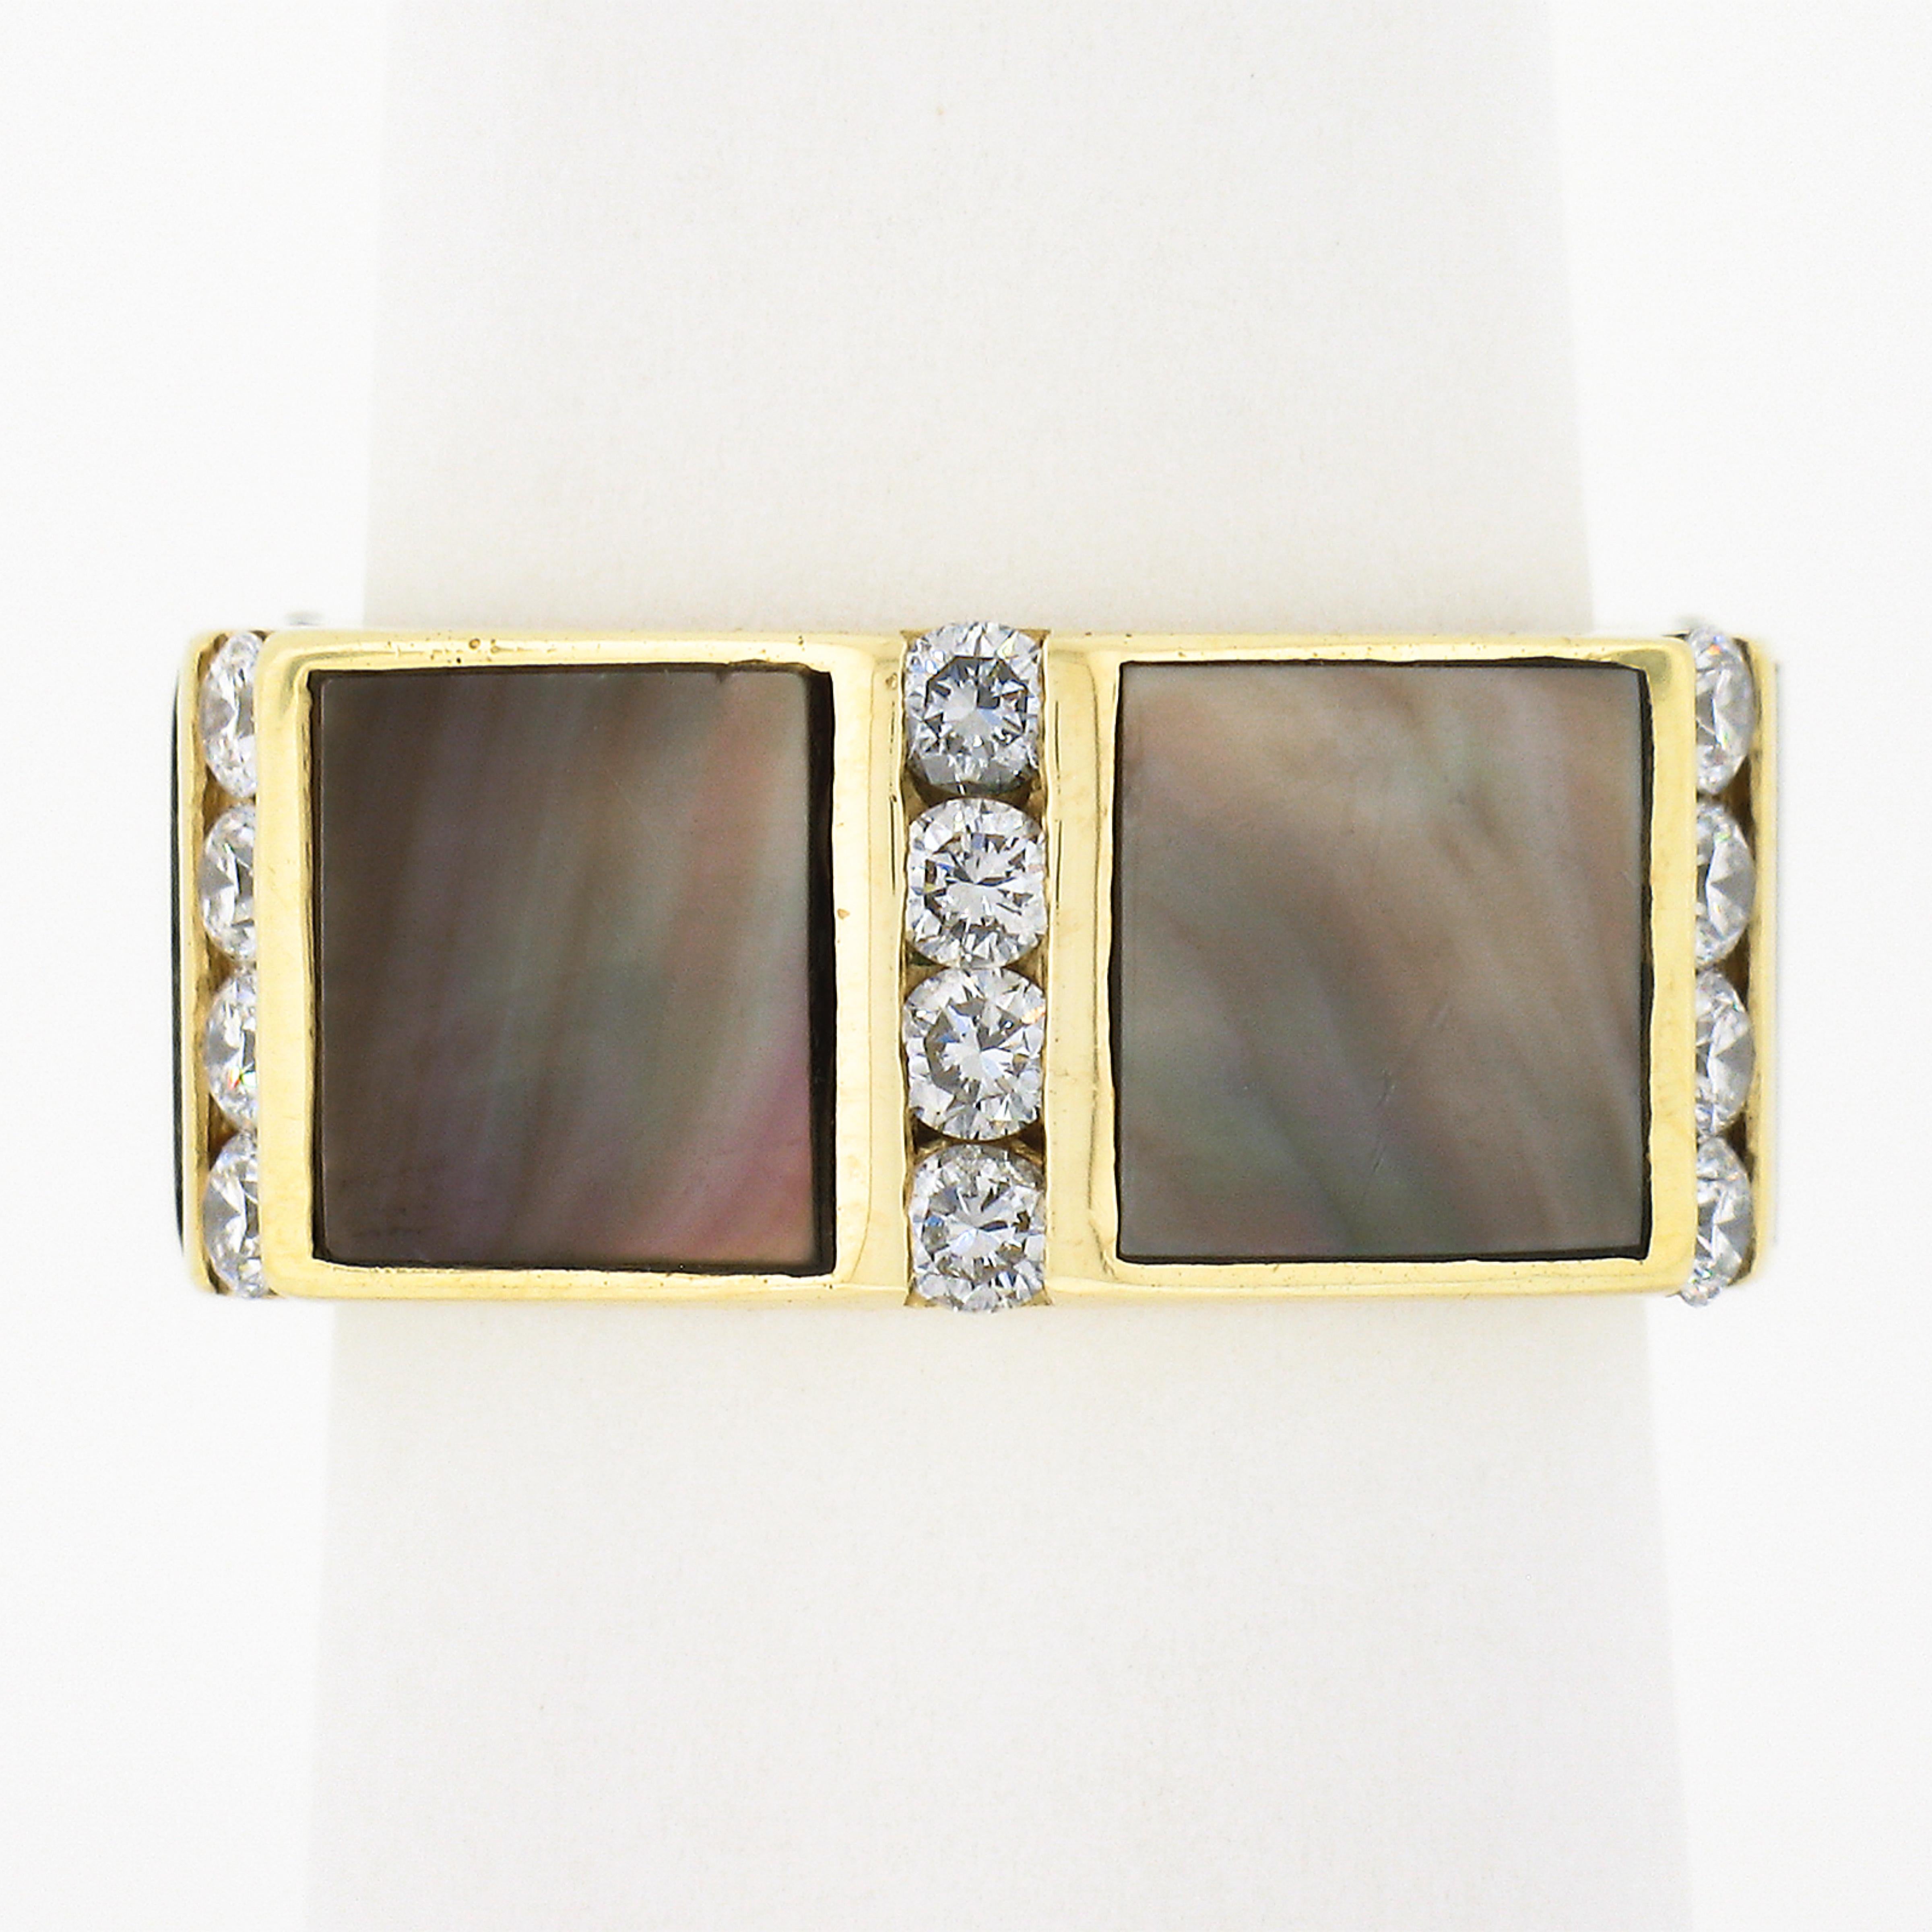 Dieser gut gemachte Vintage-Ring ist aus massivem 18-karätigem Gelbgold gefertigt und weist ein breites Ewigkeitsdesign auf, das mit wunderschönem schwarzen Perlmutt und Diamanten rund um das Band besetzt ist. Die Perlen haben einen speziellen